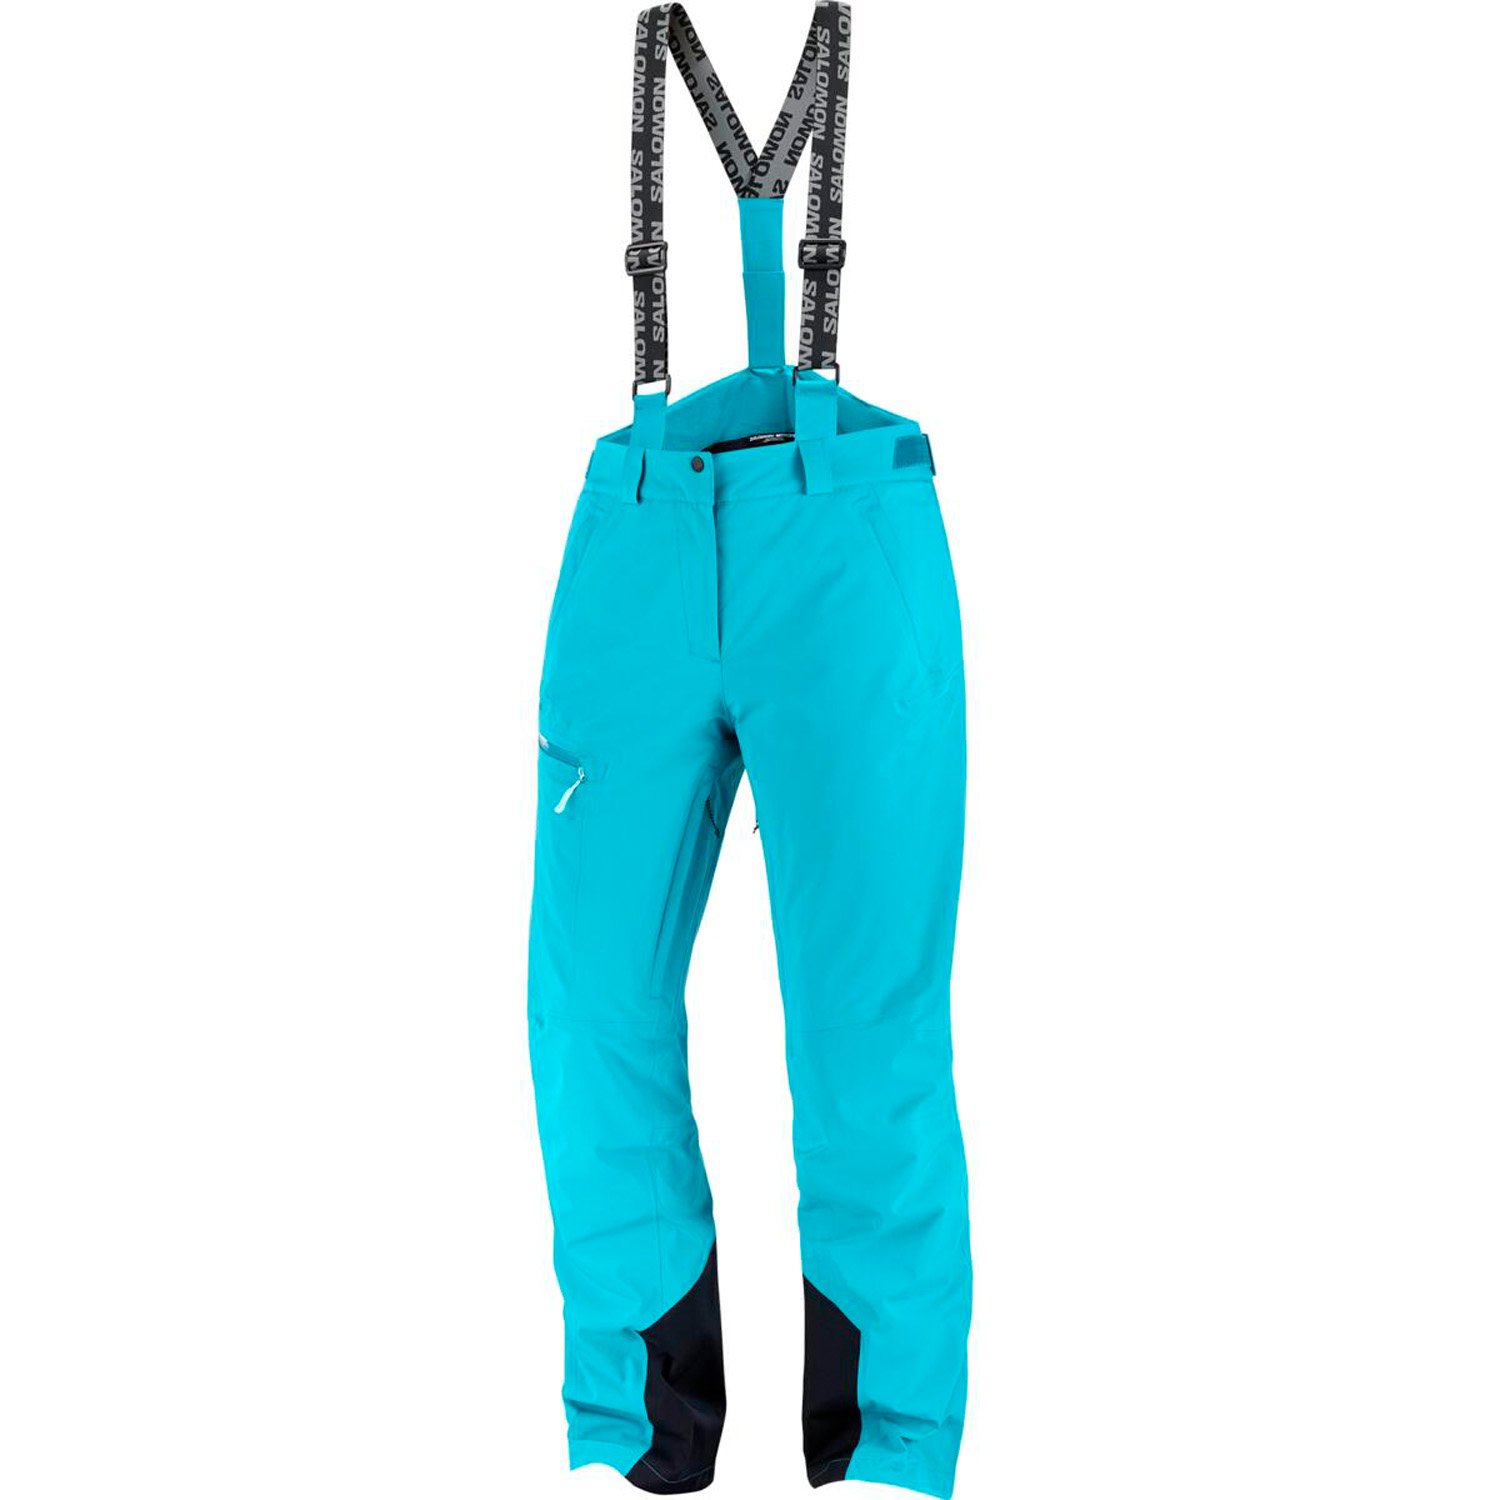 Salomon Brilliant Kadın Kayak Pantolonu - Mavi - 1